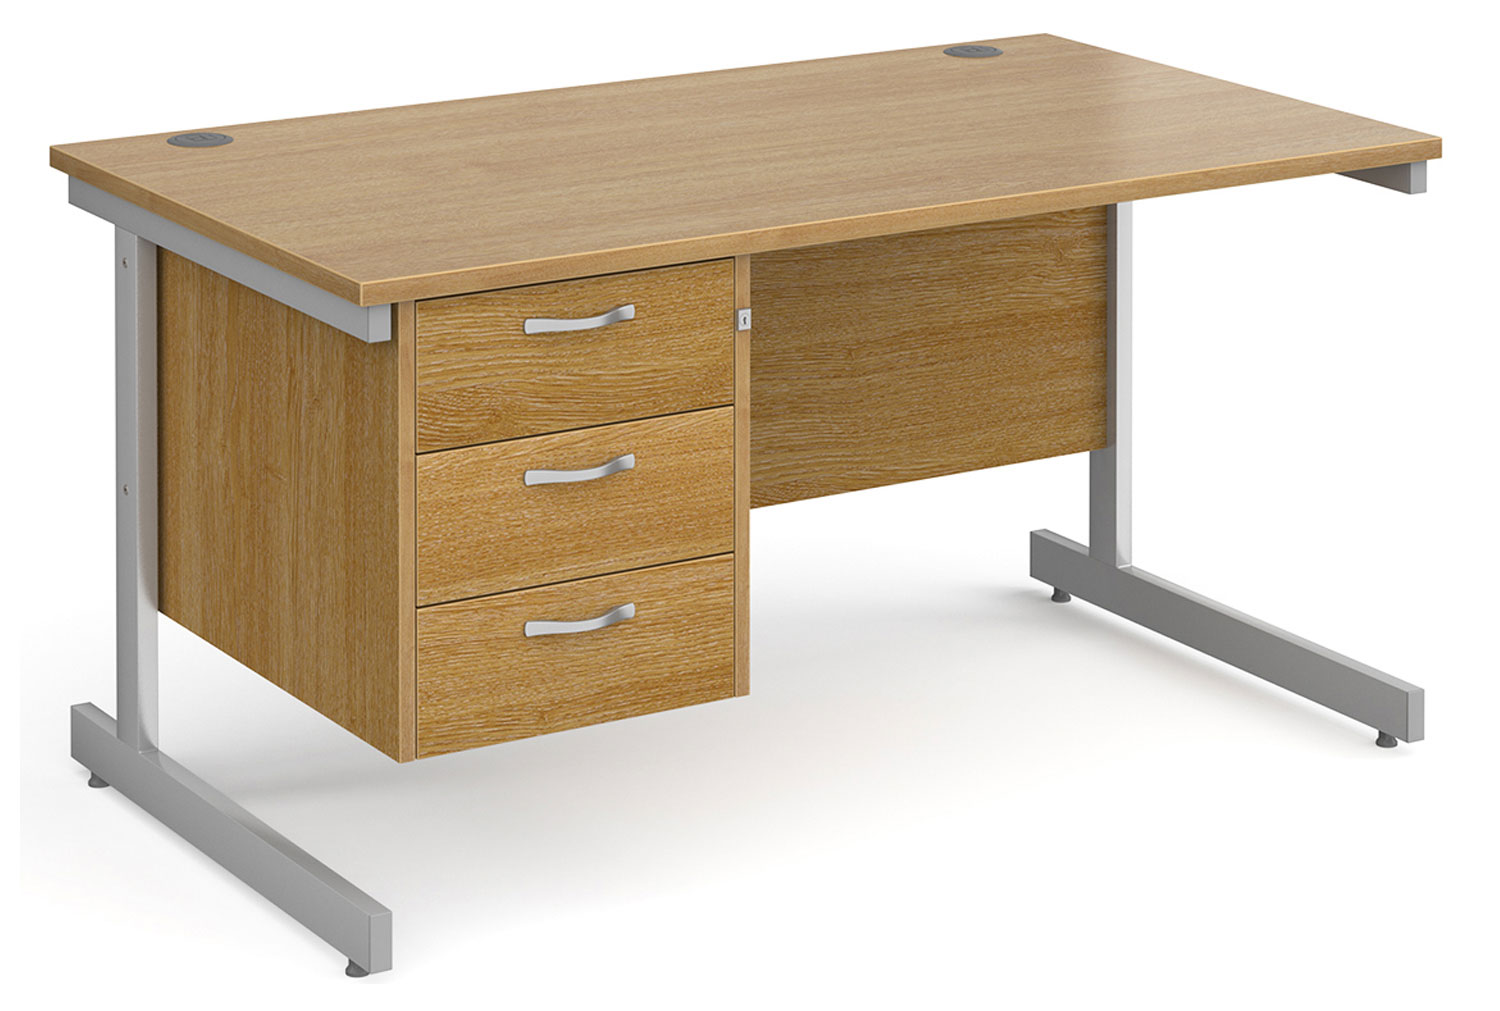 All Oak C-Leg Clerical Office Desk 3 Drawer, 140wx80dx73h (cm), Fully Installed